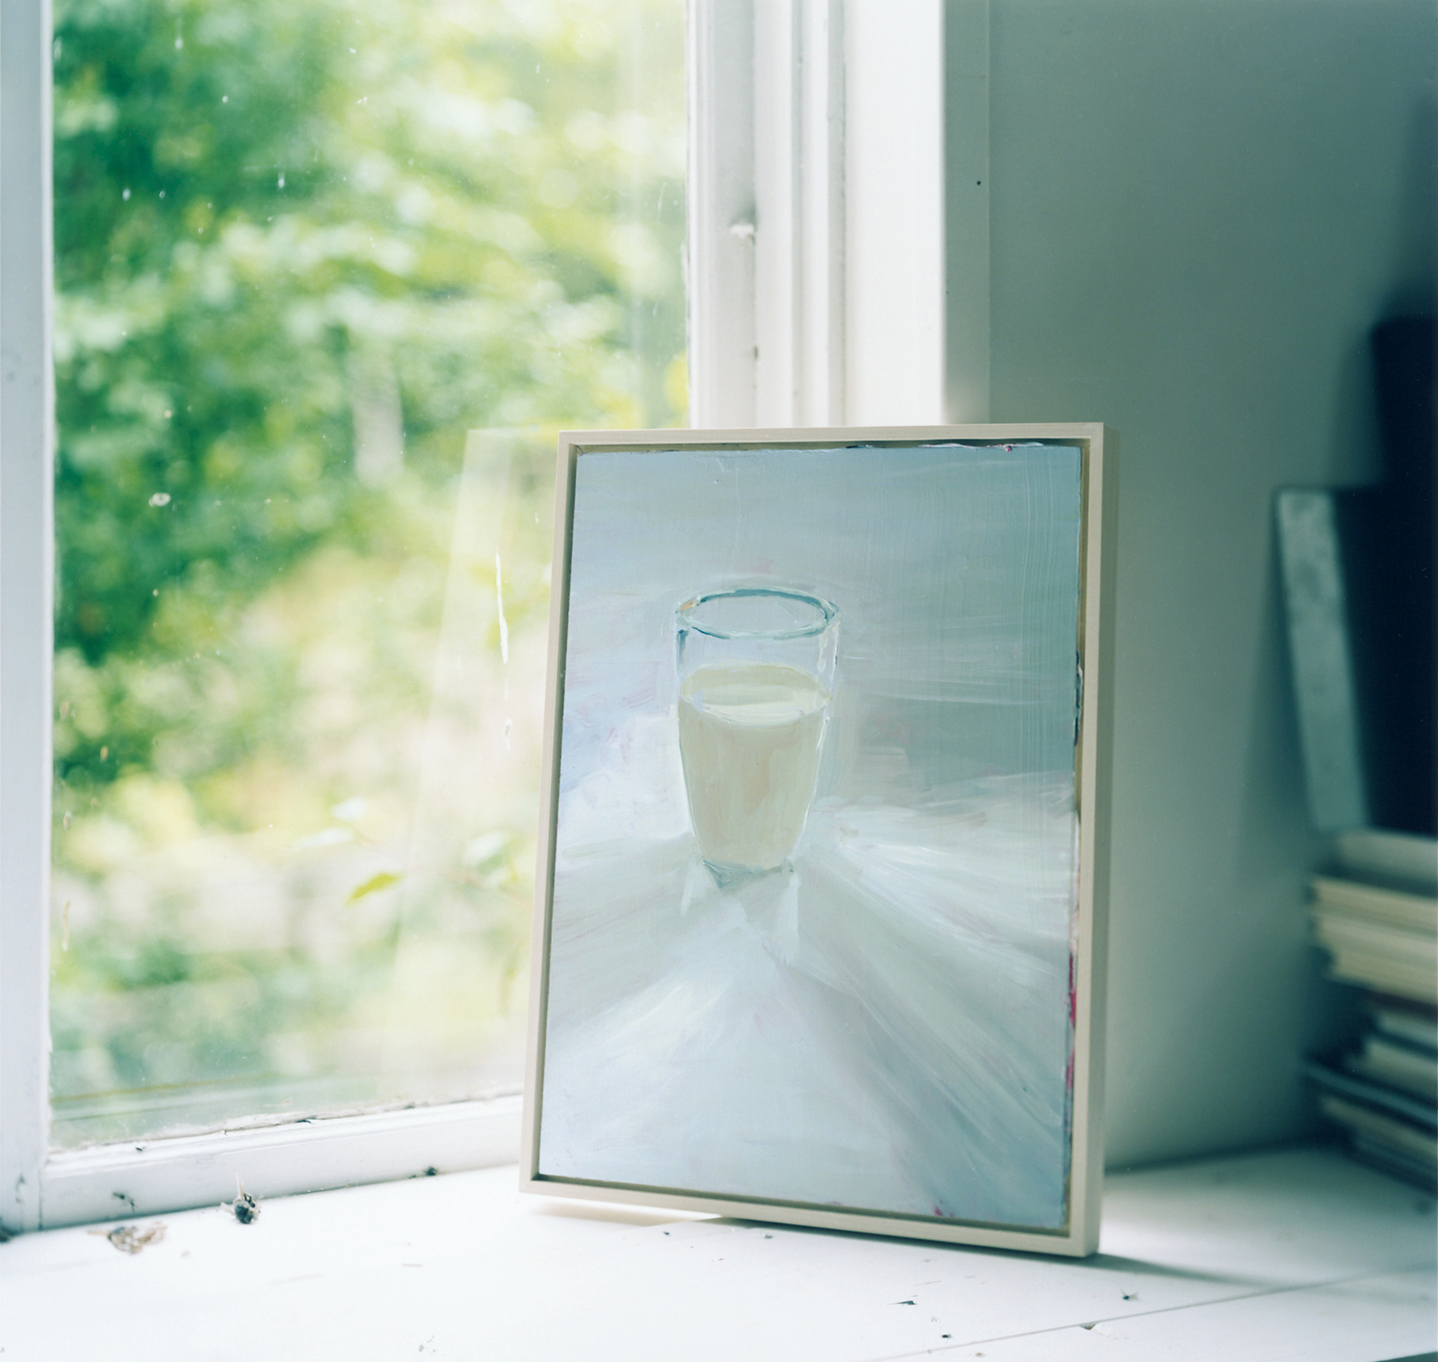 山野アンダーソン陽子さんの発案から生まれたアートブック『Glass ...